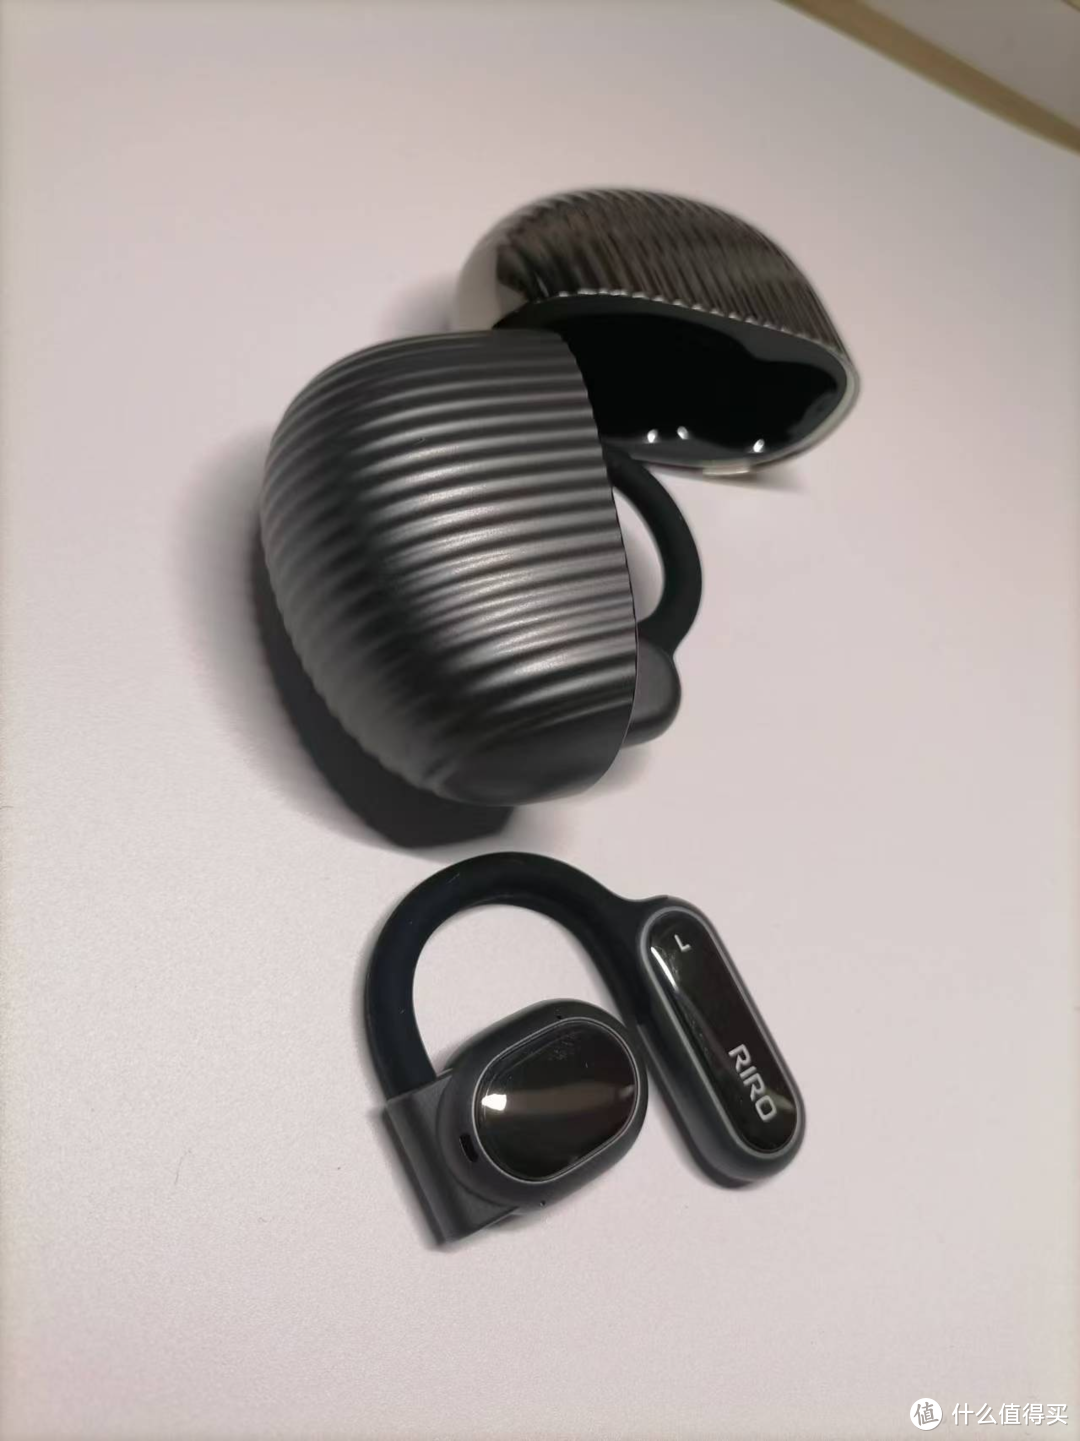 2024年618开放式蓝牙耳机推荐：RIRO AirFree C20，只需要百元的价格，就能拥有HIFI级别音质开放式耳机